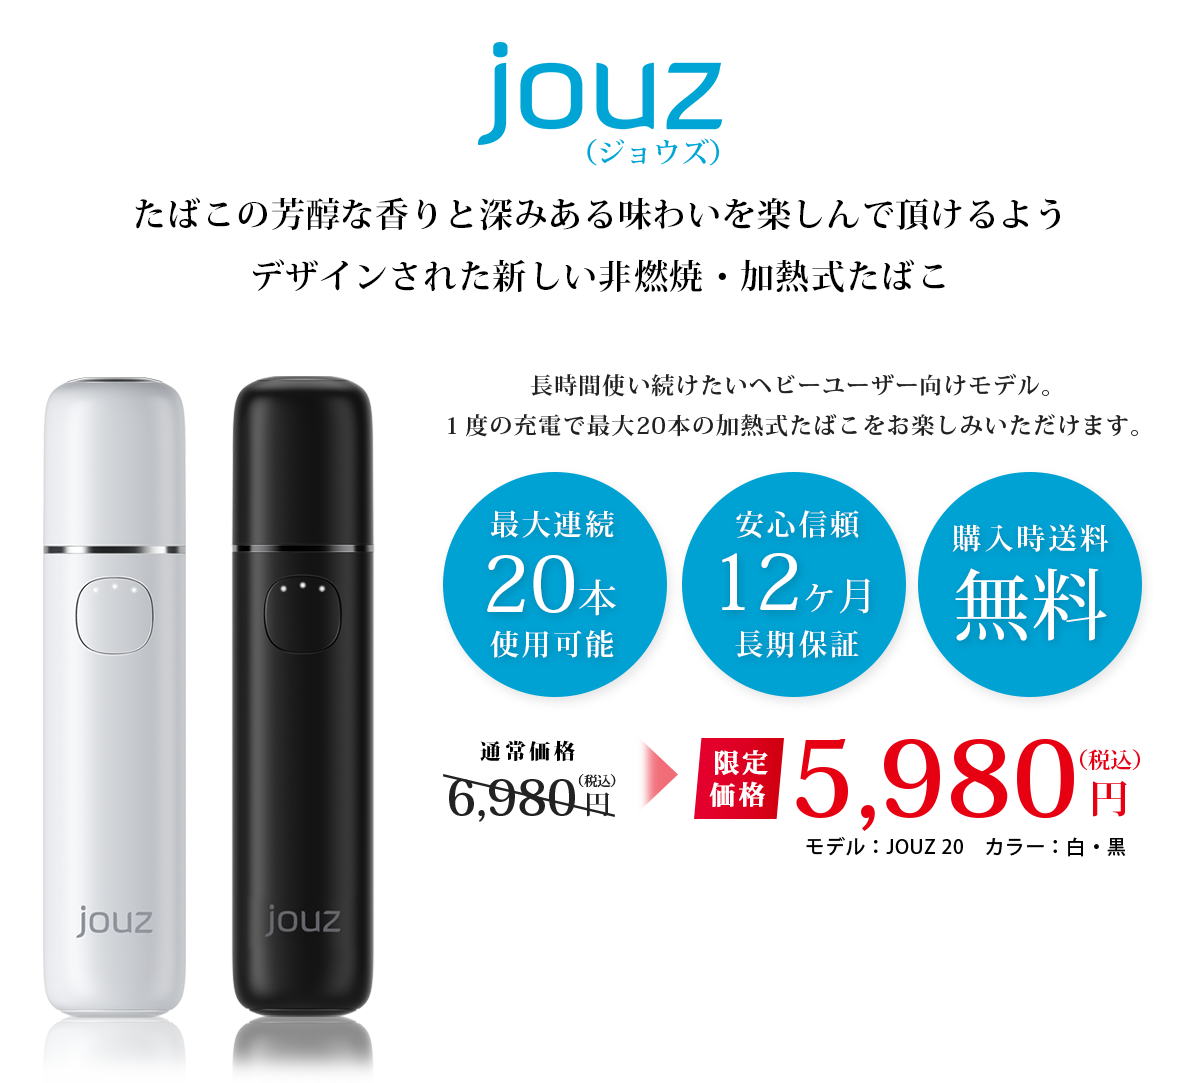 待たずに吸える加熱式たばこ ⾼品質でスタイリッシュな充電⼀体型モデル    話題の新デバイスが遂に⽇本上陸 jouz 通常価格6,980円が5,980円